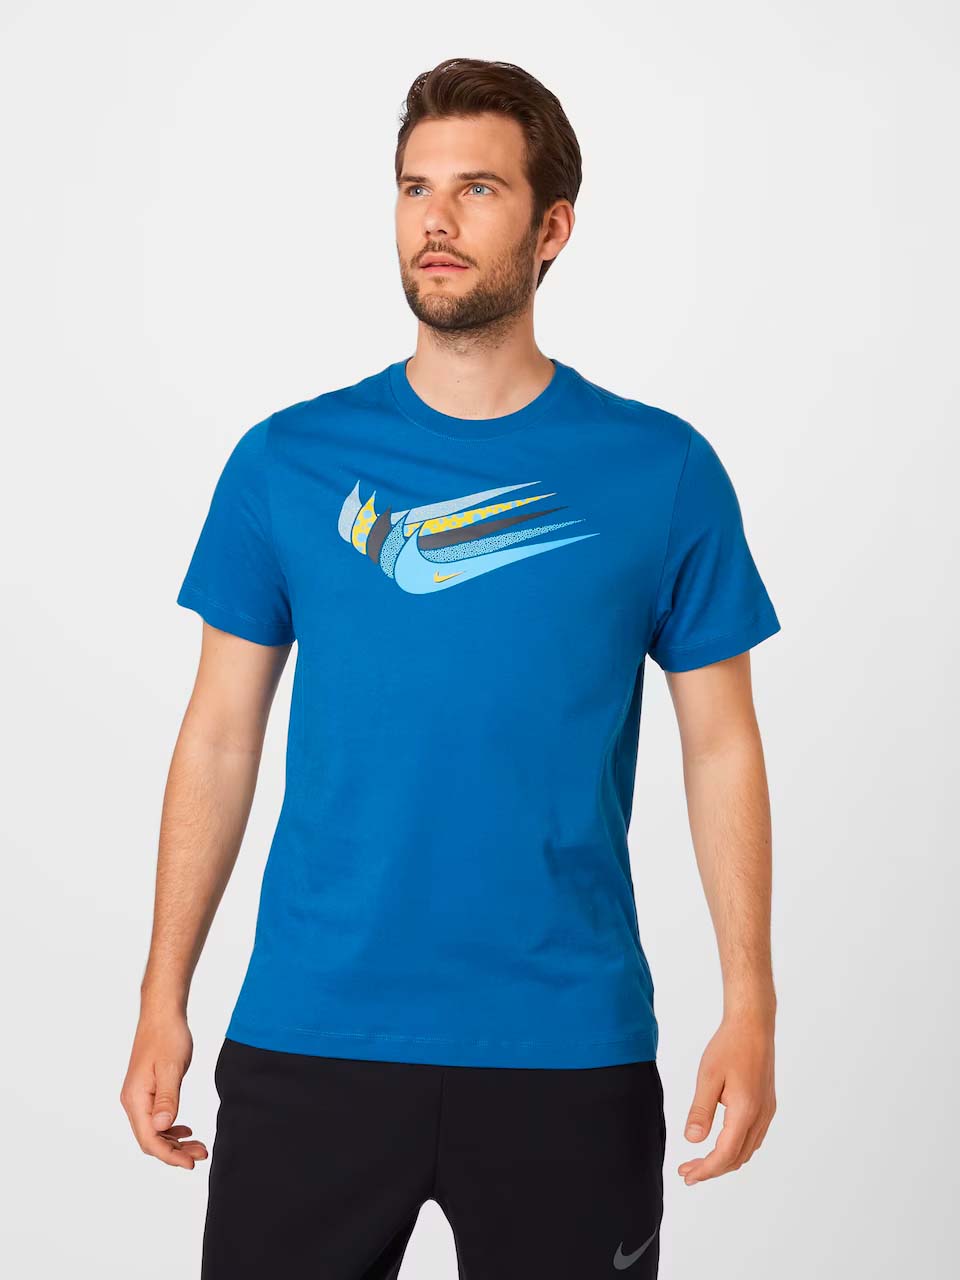 T-shirt Nike Tee